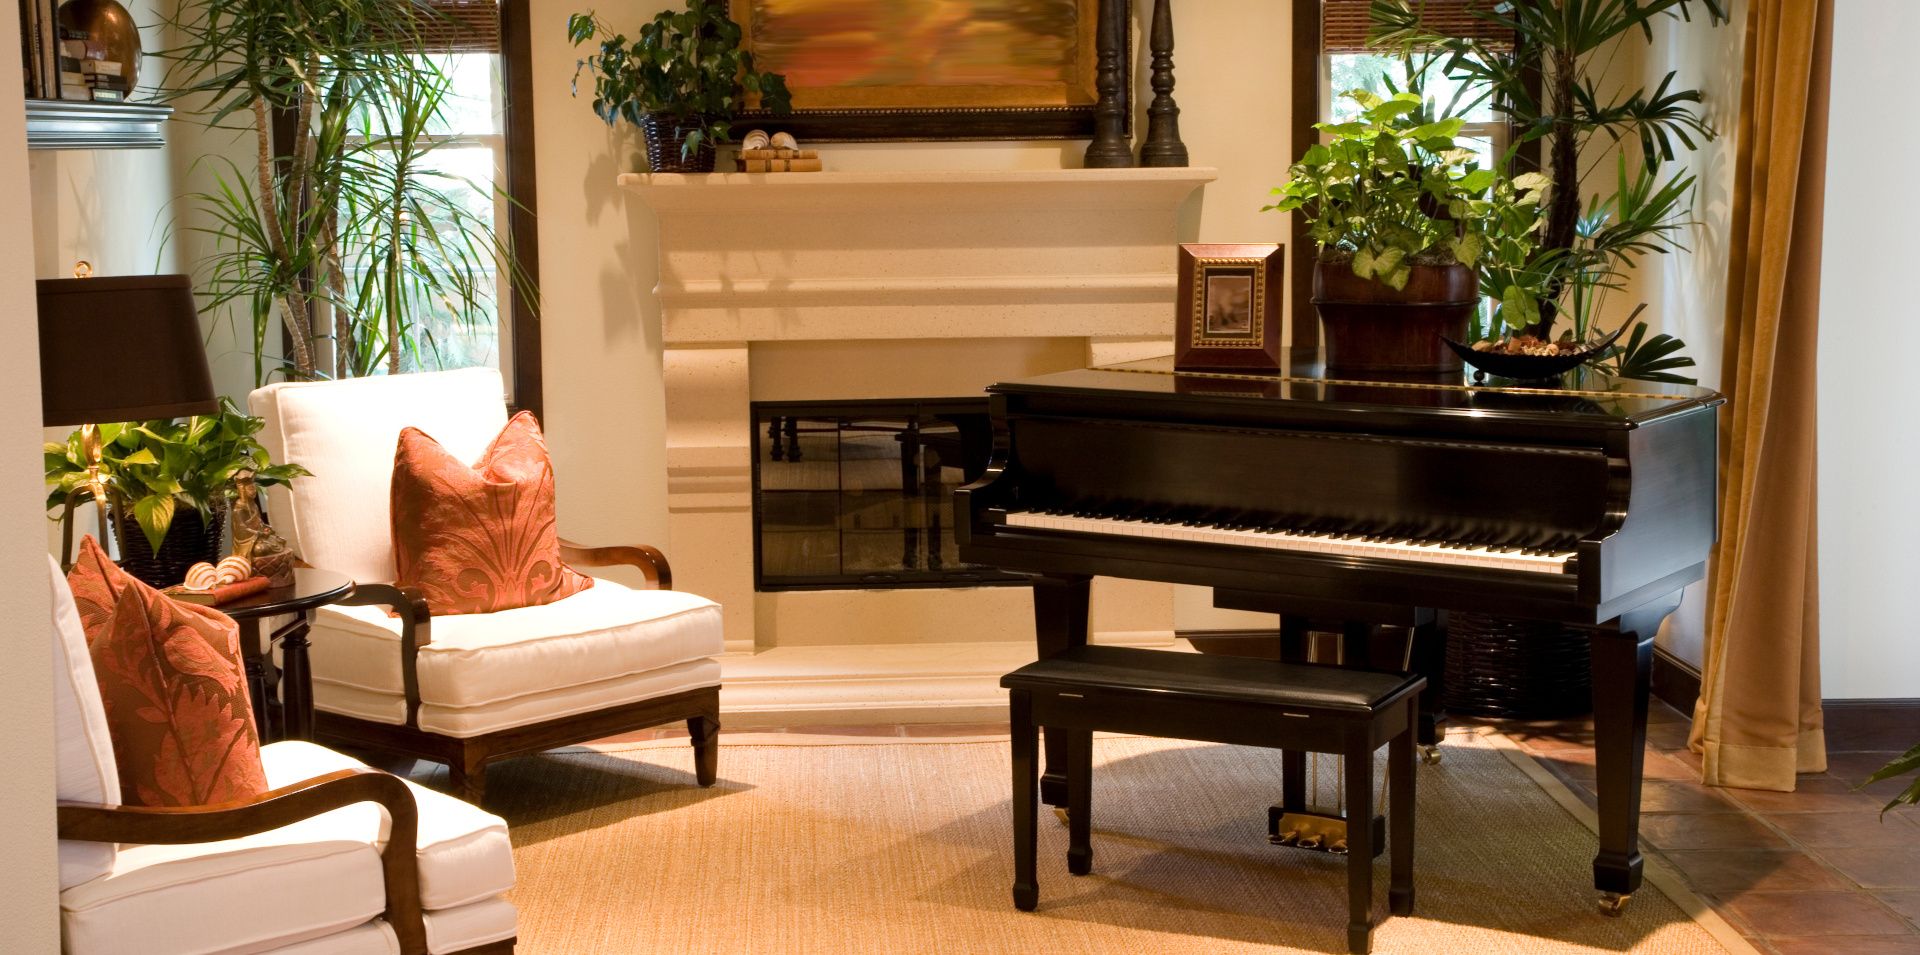 Grand piano in room